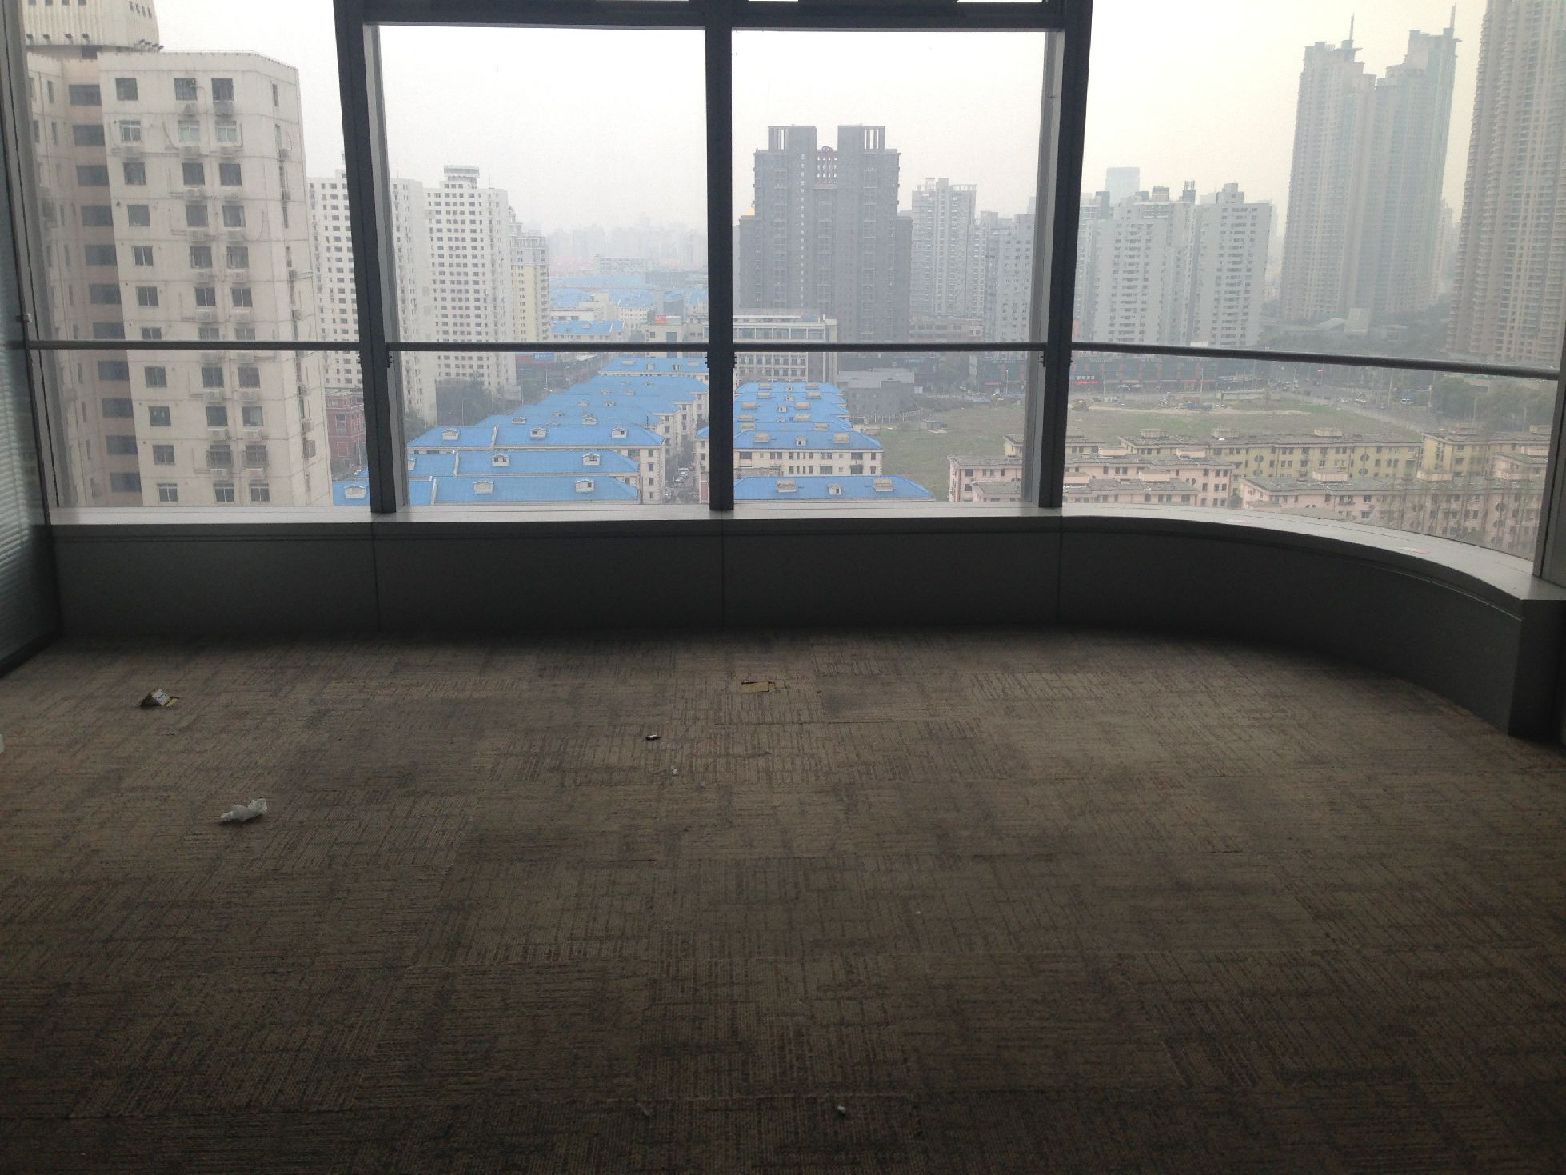 鄂尔多斯国际大厦八佰伴商圈,上海湾,精装修122平米,房型方正,多套可选!